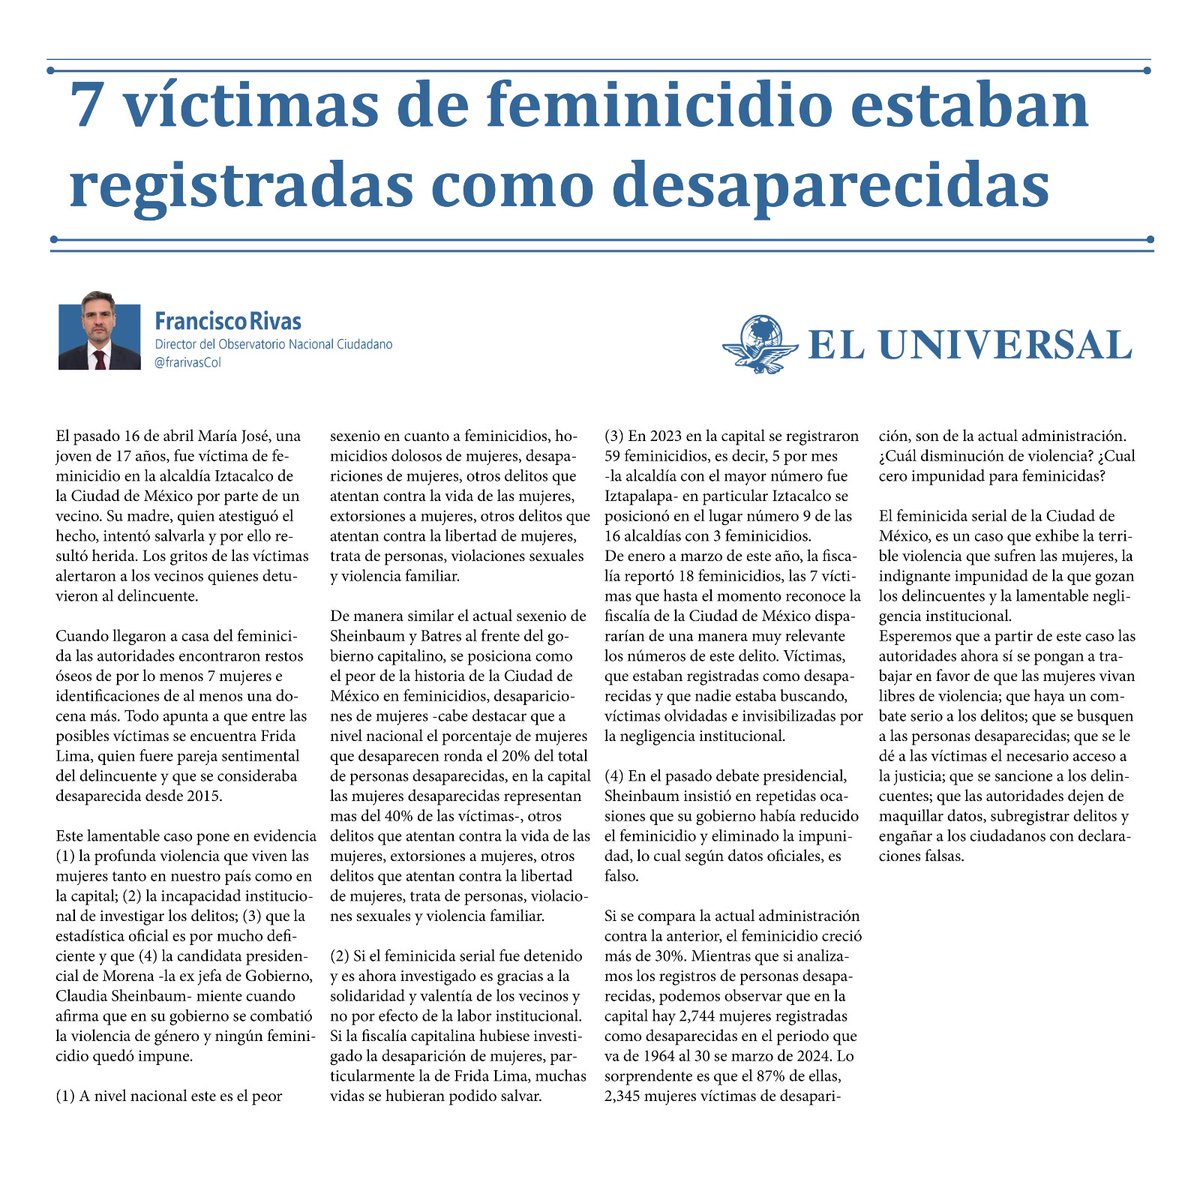 De enero a marzo de este año, la fiscalía reportó 18 feminicidios, las 7 víctimas que hasta el momento reconoce la fiscalía de la Ciudad de México dispararían de una manera muy relevante los números de este delito. Víctimas, que estaban registradas como desaparecidas y que nadie…